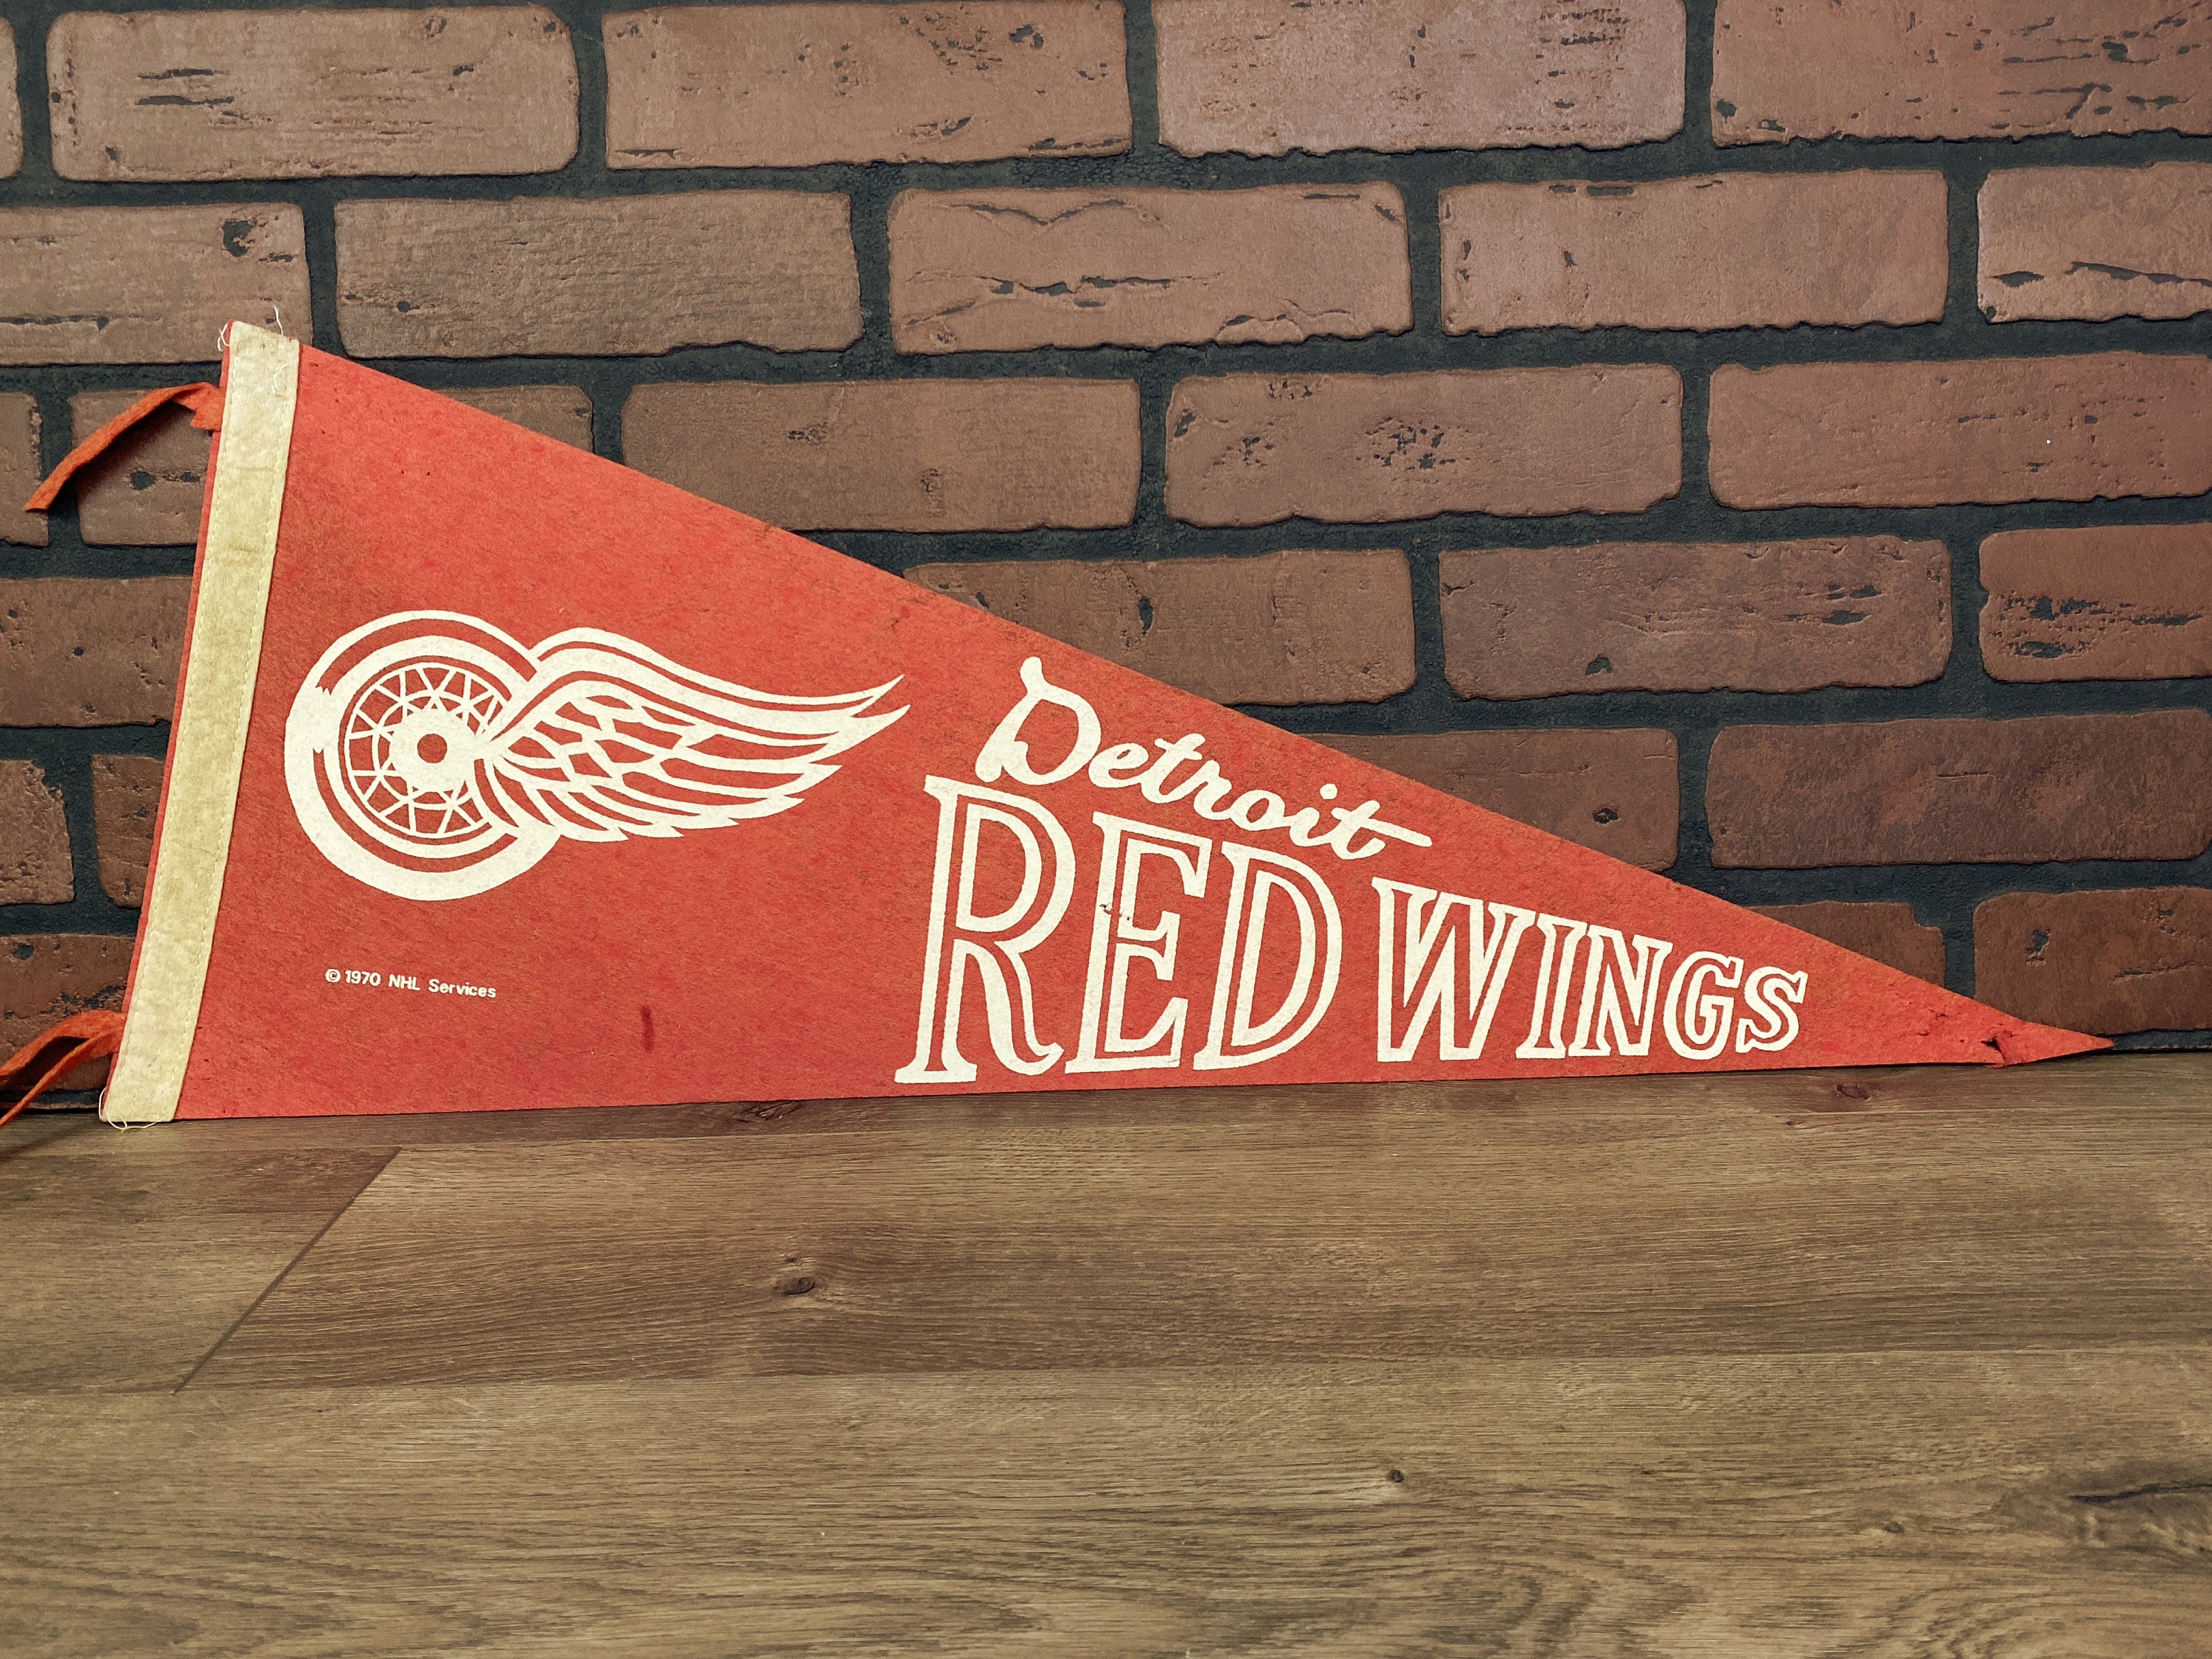 Detroit Red Wings Banner Flag